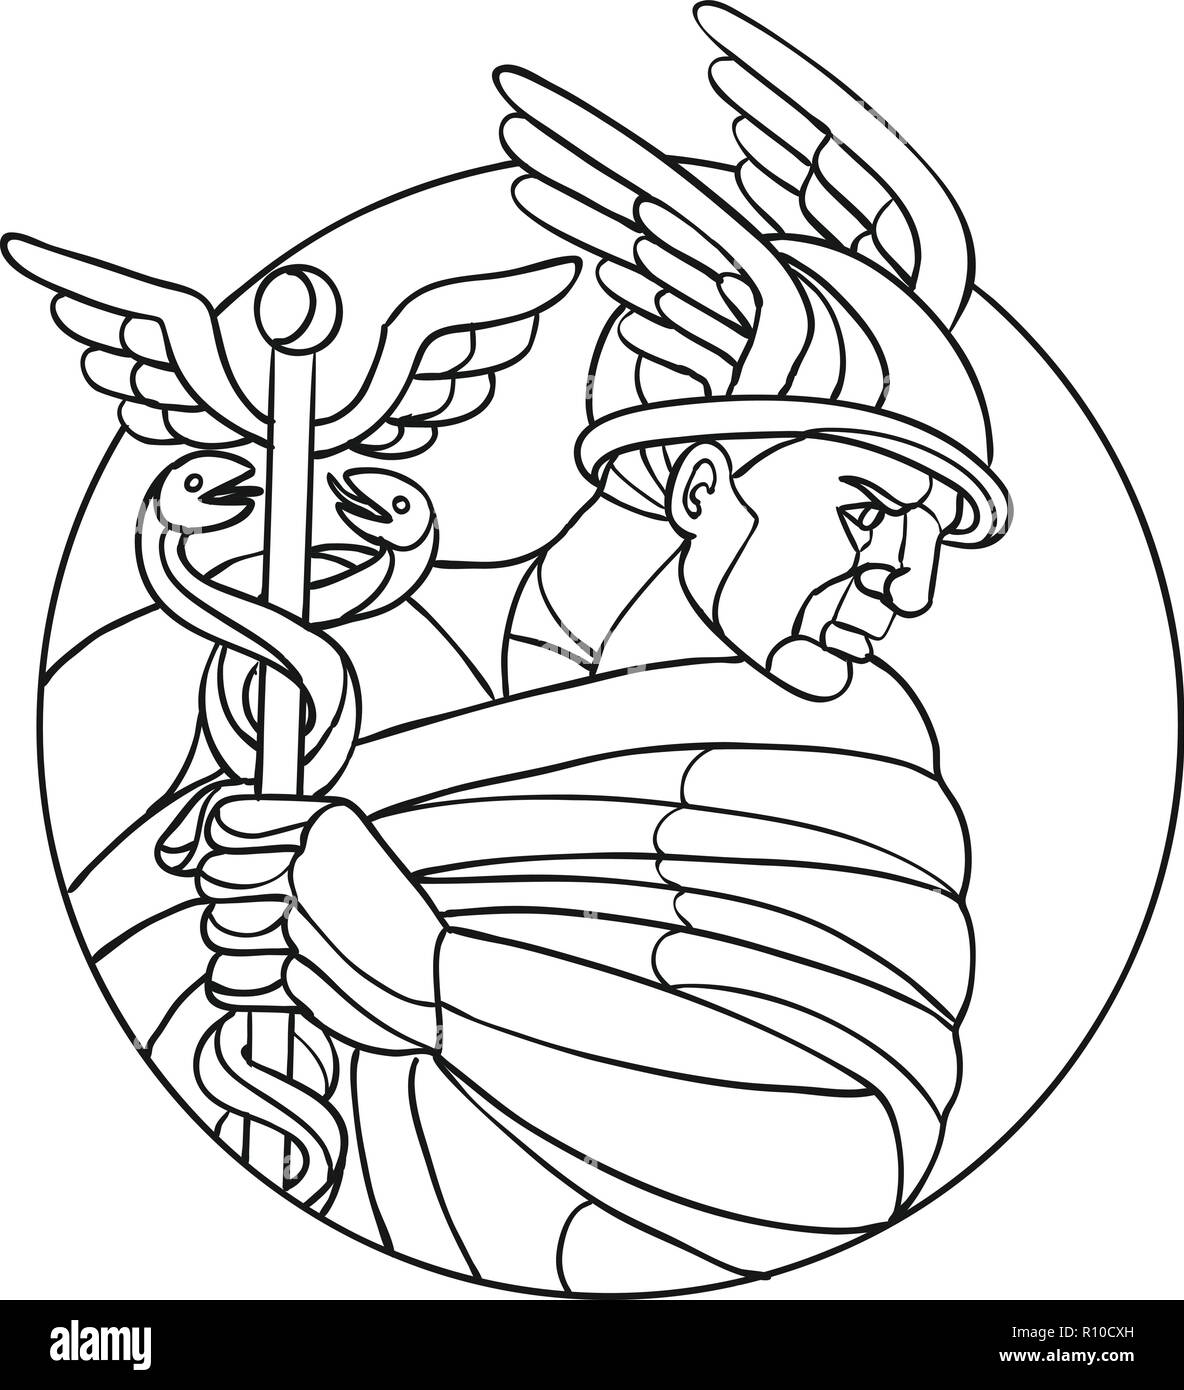 Mosaik low polygon Stil Abbildung von Merkur, dem Römischen Gott oder in der Griechischen Mythologie Hermes, Bote der Götter in Schwarz und in Weiß. Stock Vektor